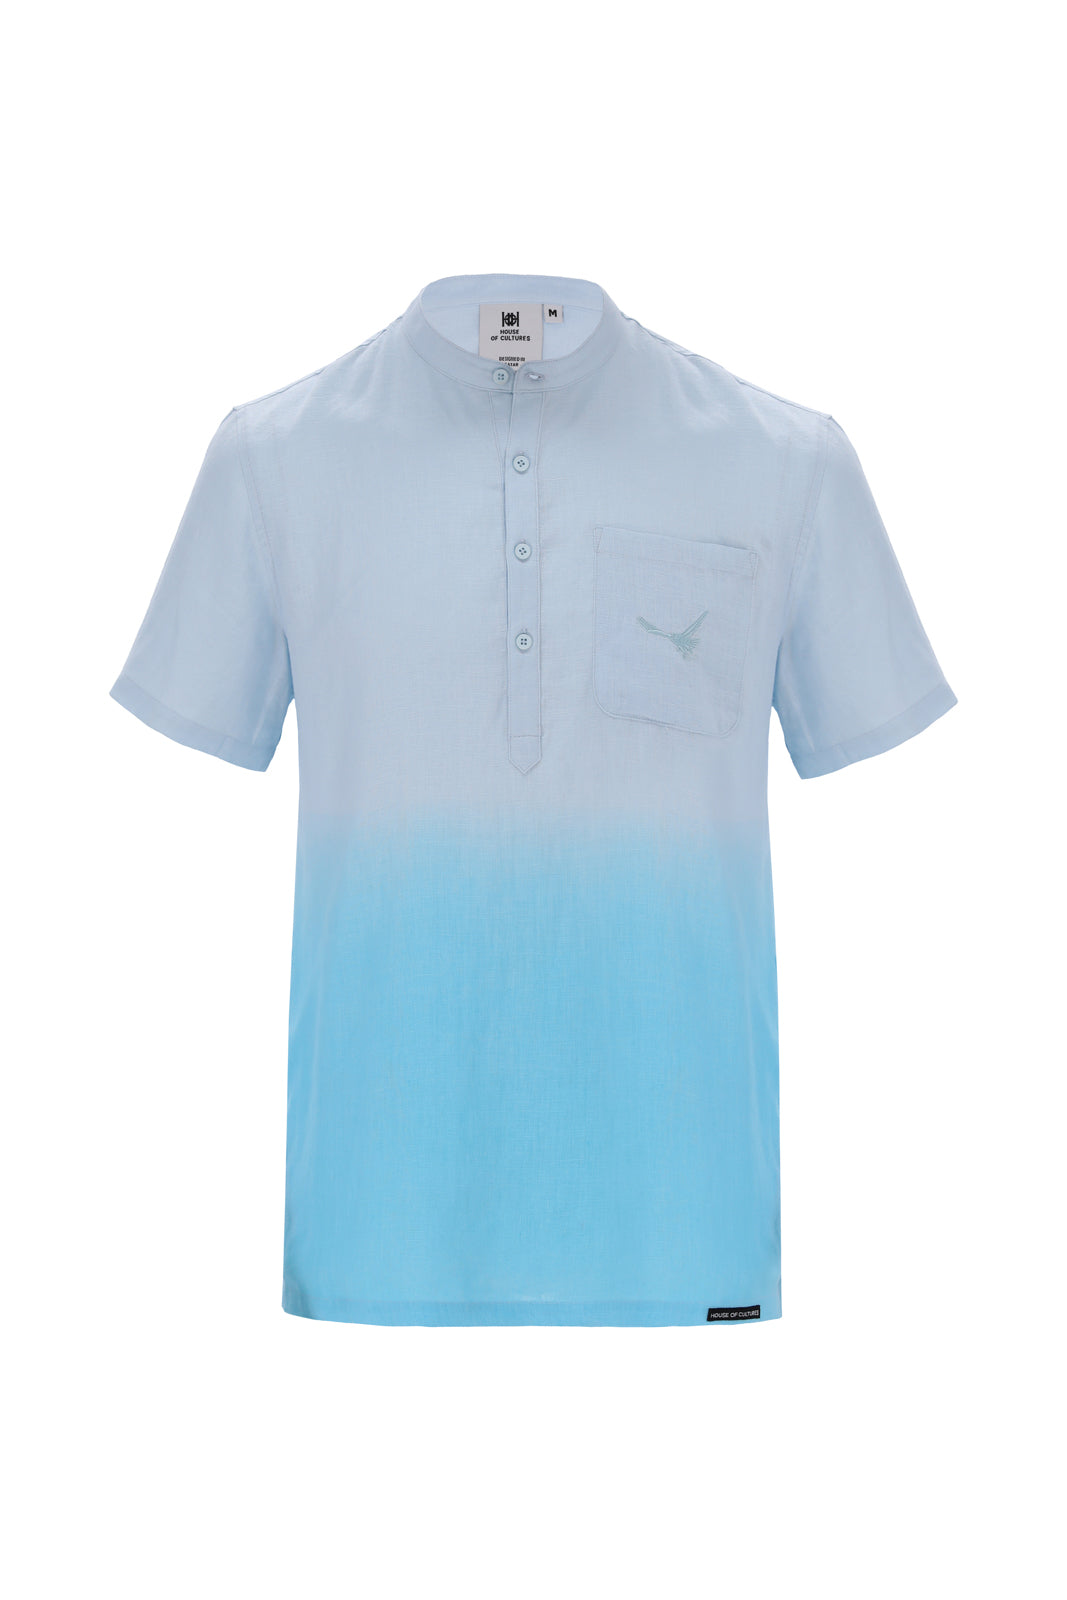 Men Linen Shirt Ombre Blue